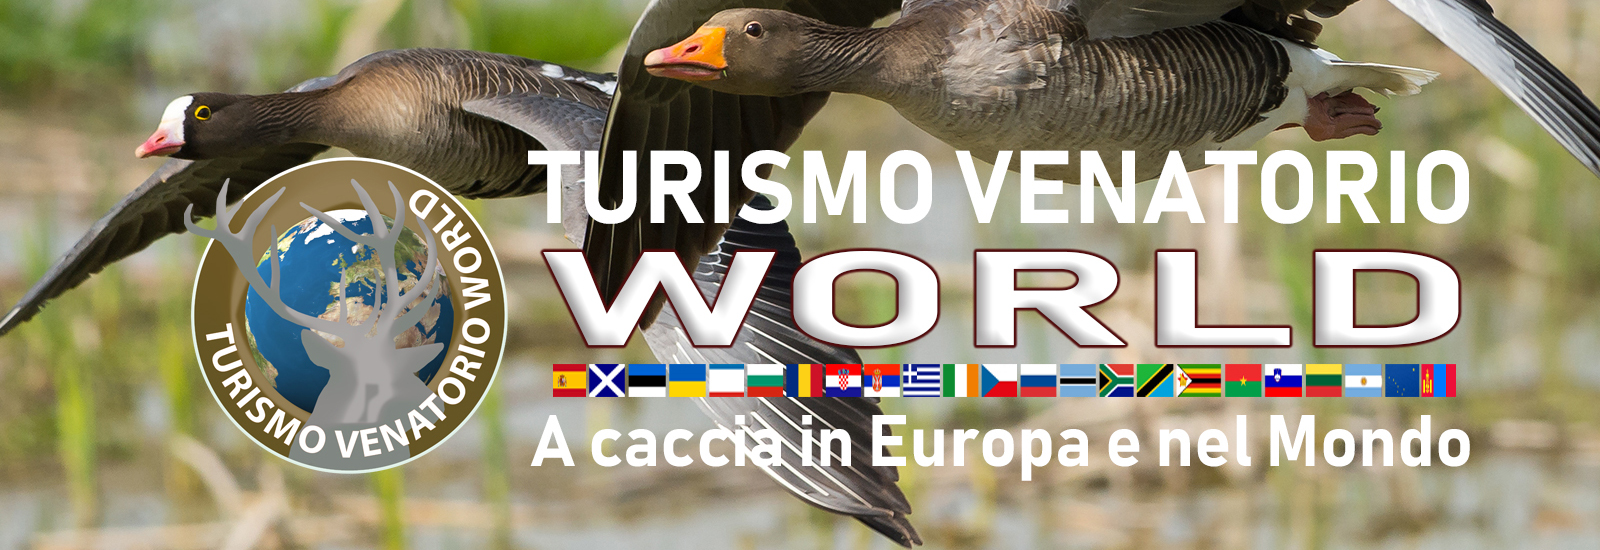 turismo venatorio world caccia in europa e nel mondo